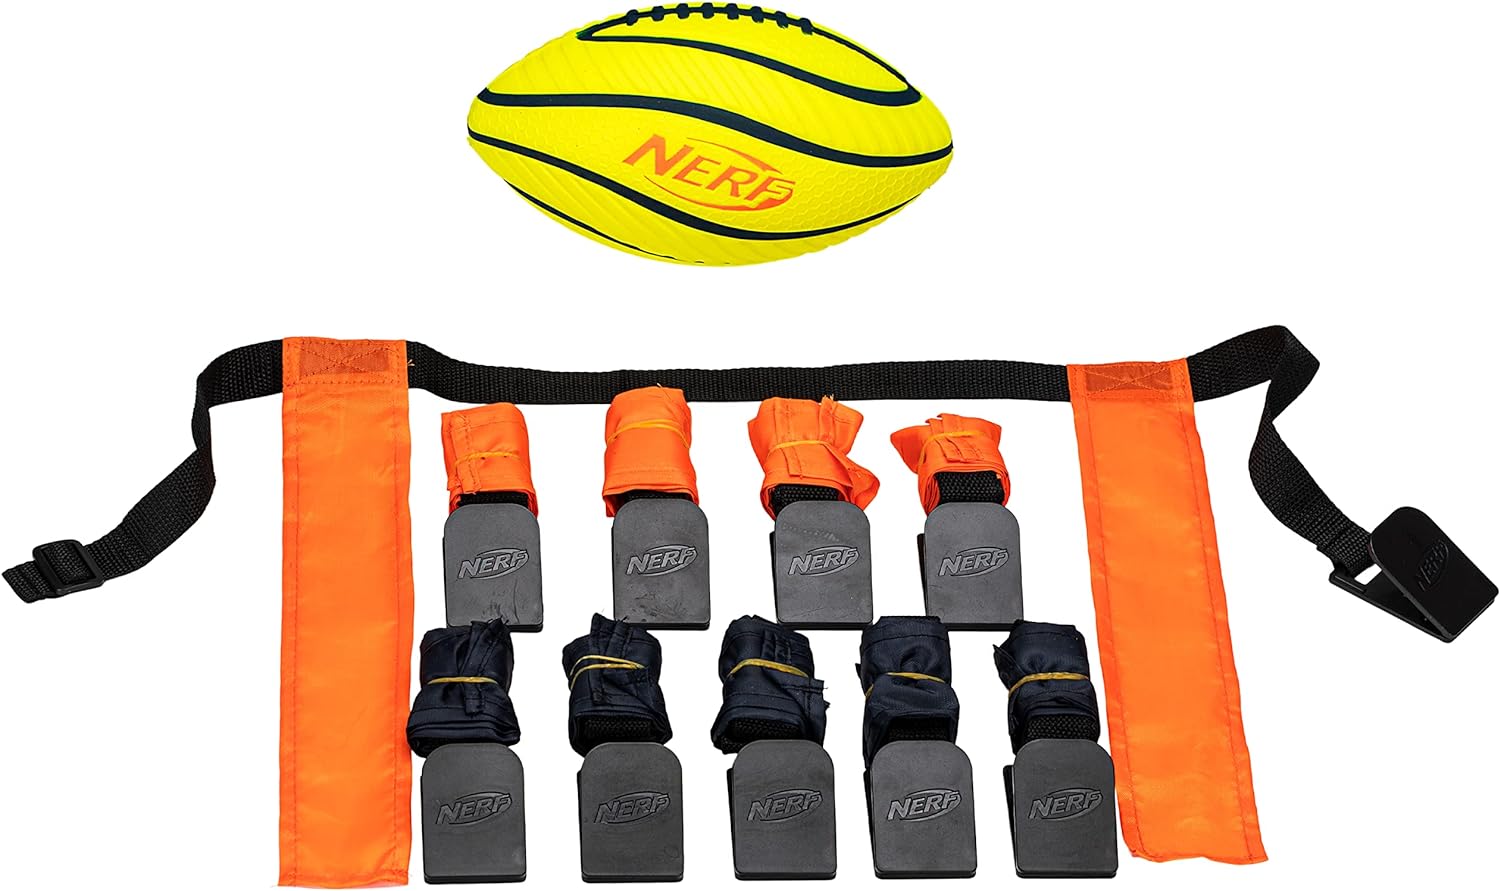 NERF 10 Player Flag Football Belts + Football Set - Youth Flag Football Belts + Junior Foam Football for Kids - Full Flag Football Kit for 5 v 5 Games - Includes (10) Flag Sets + 1 Foam Football